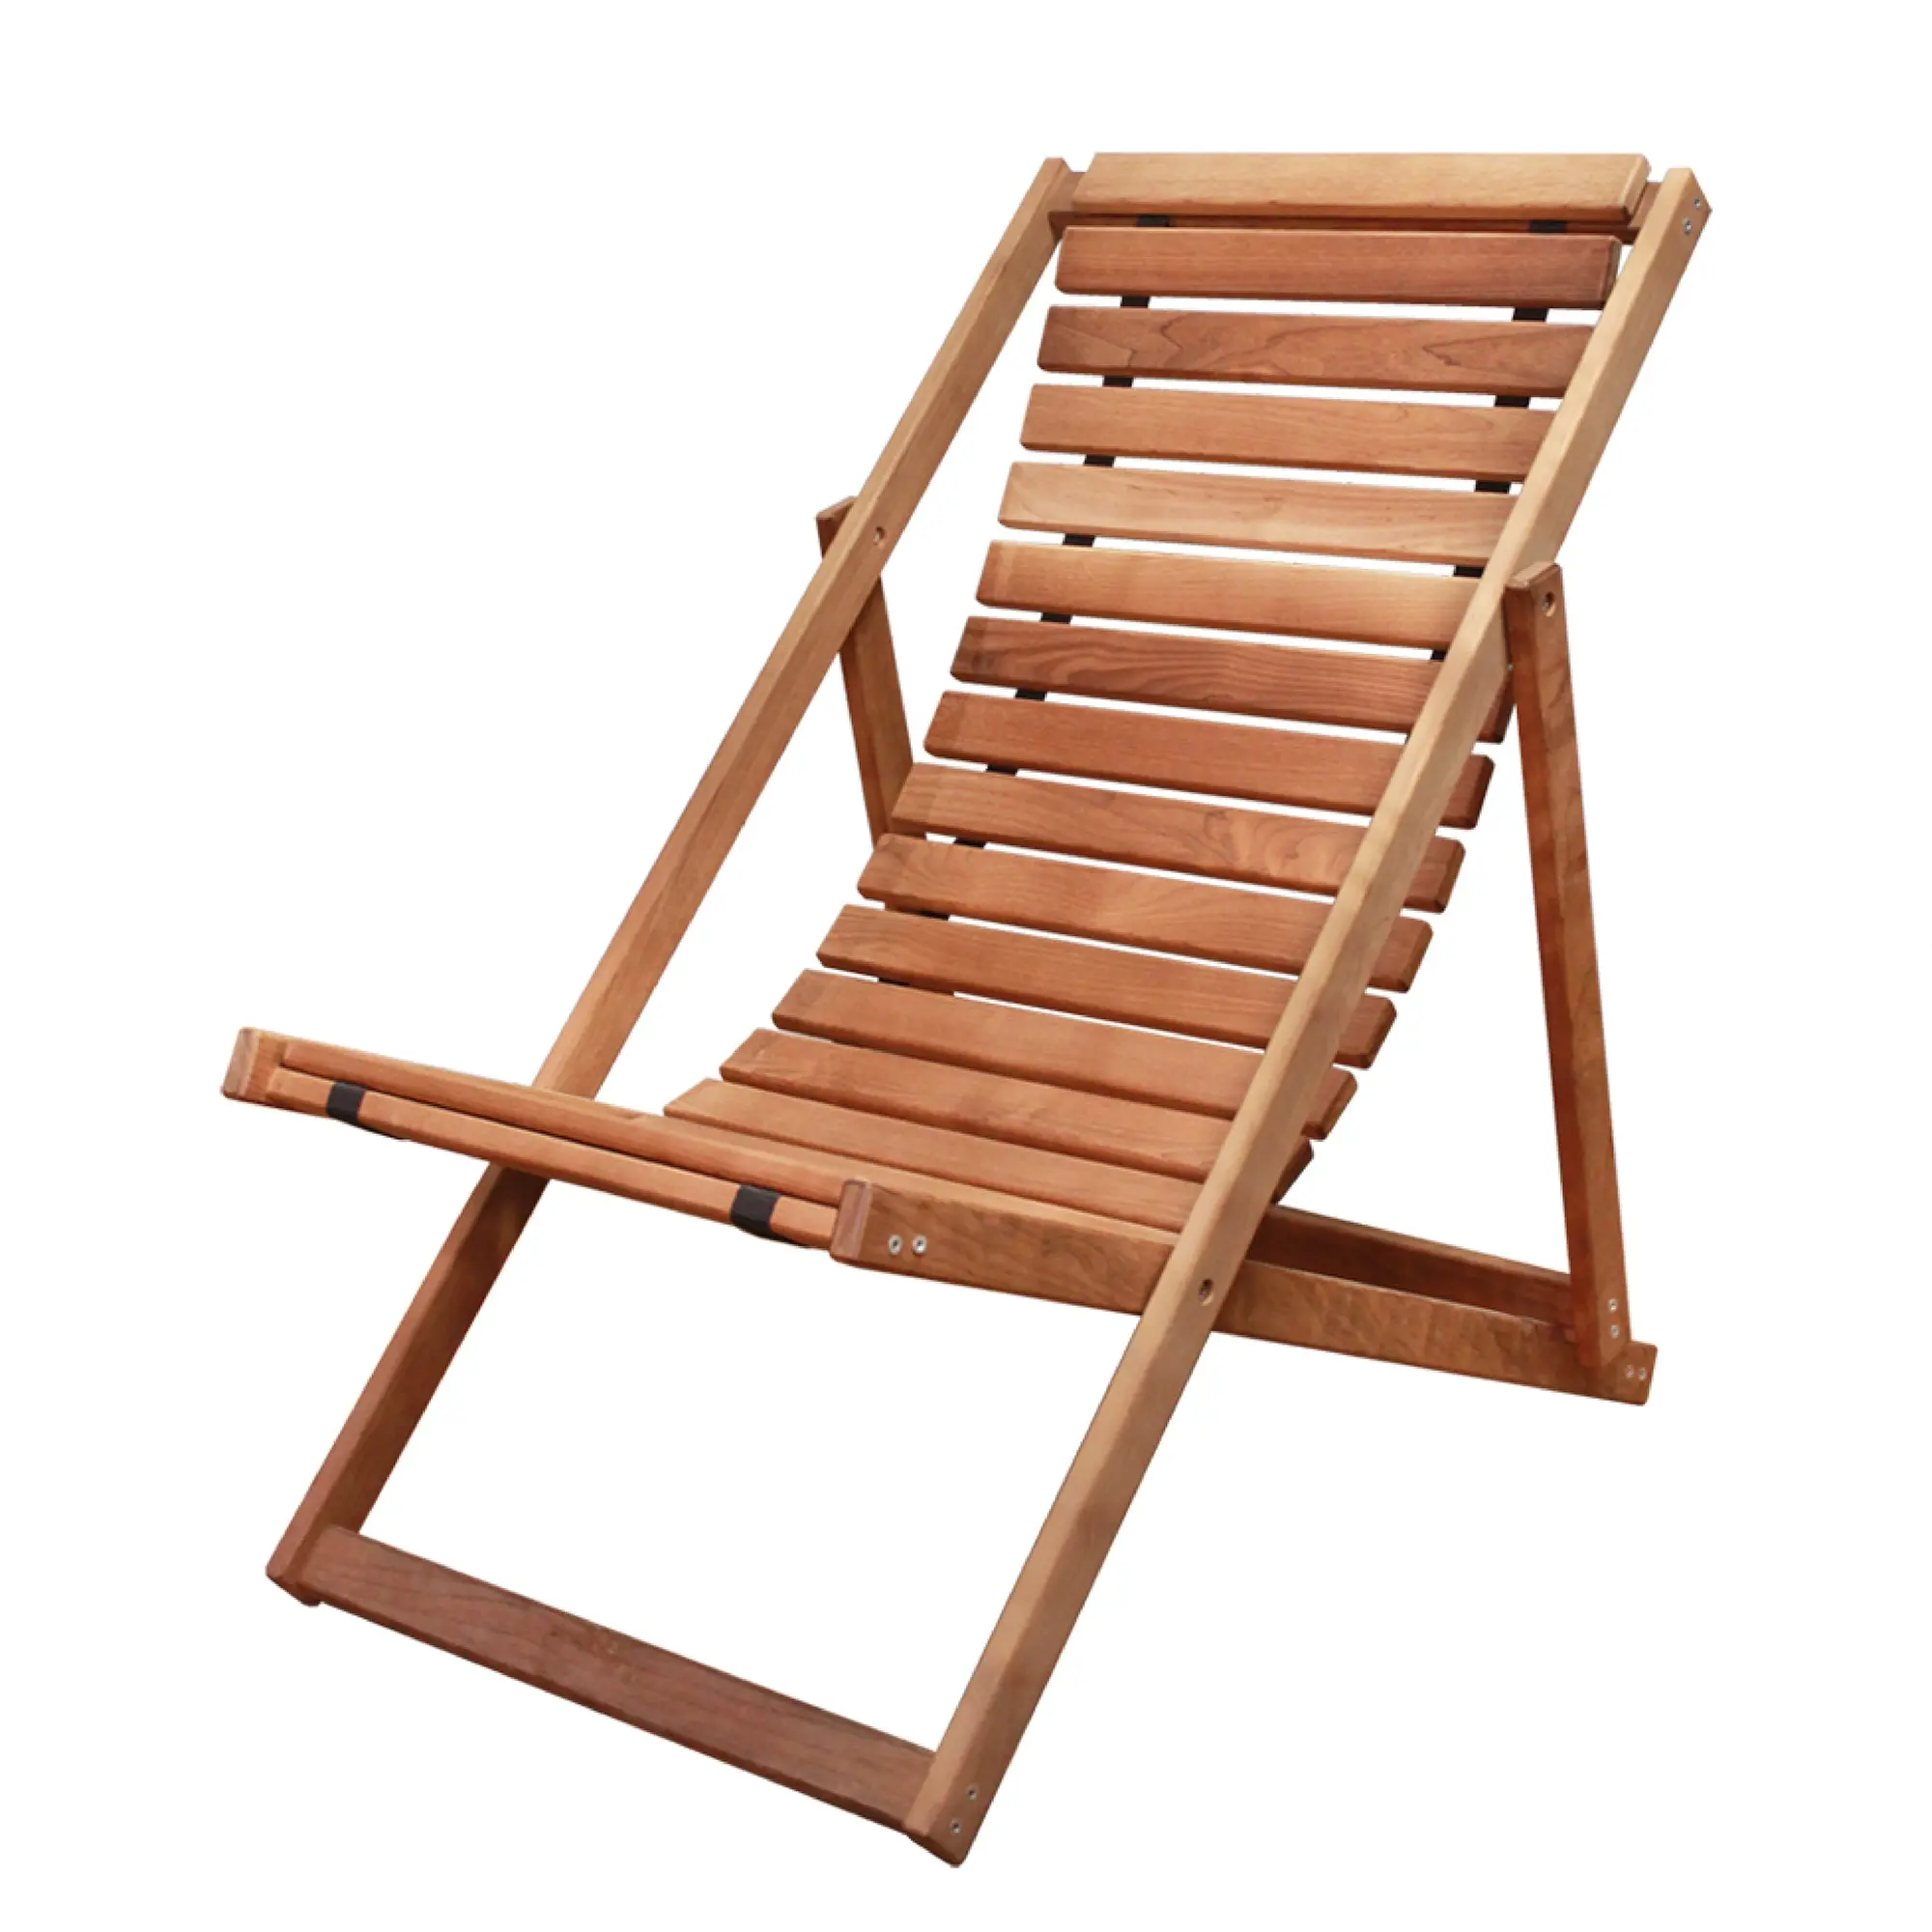 Lettino da sole in legno piegato in legno massello realizzato in termo betulla/chaise longue resistente all'umidità per piscina, sauna, all'aperto